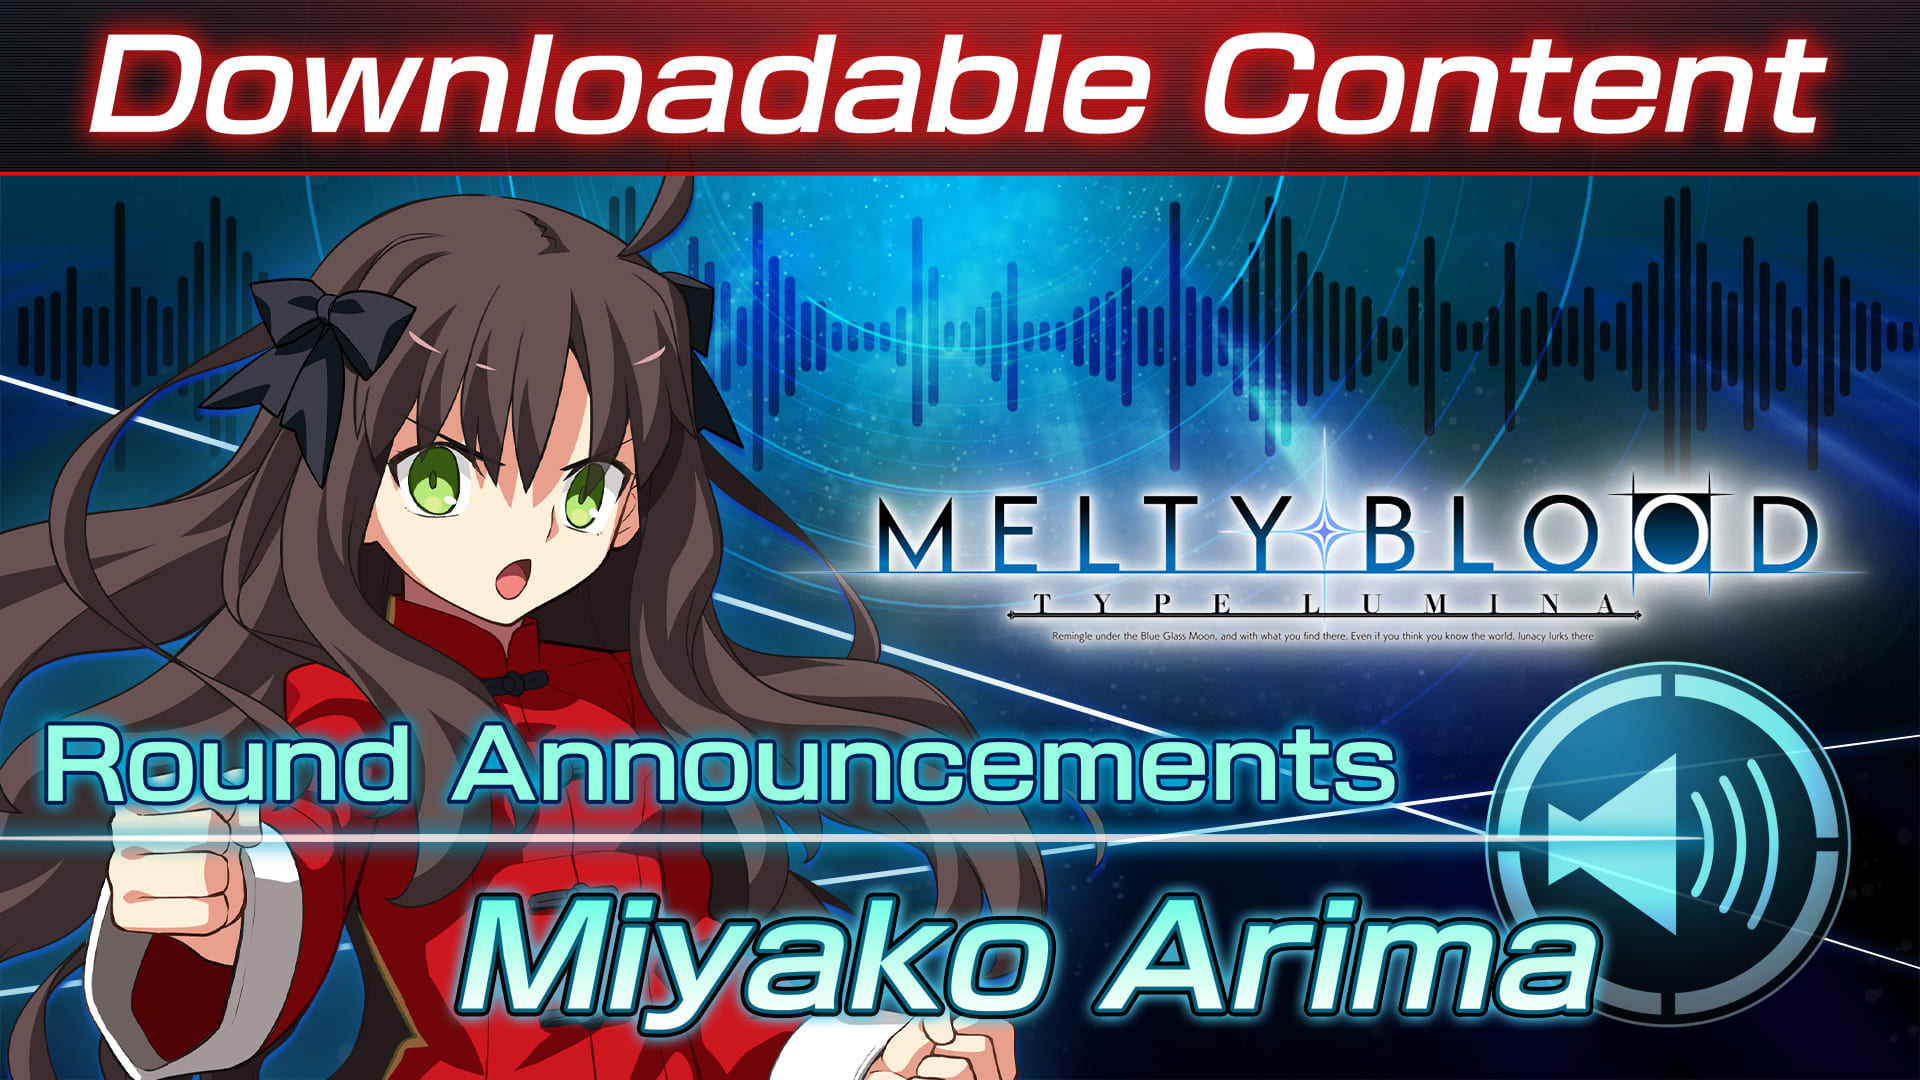 DLC: Miyako Arima Round Announcements